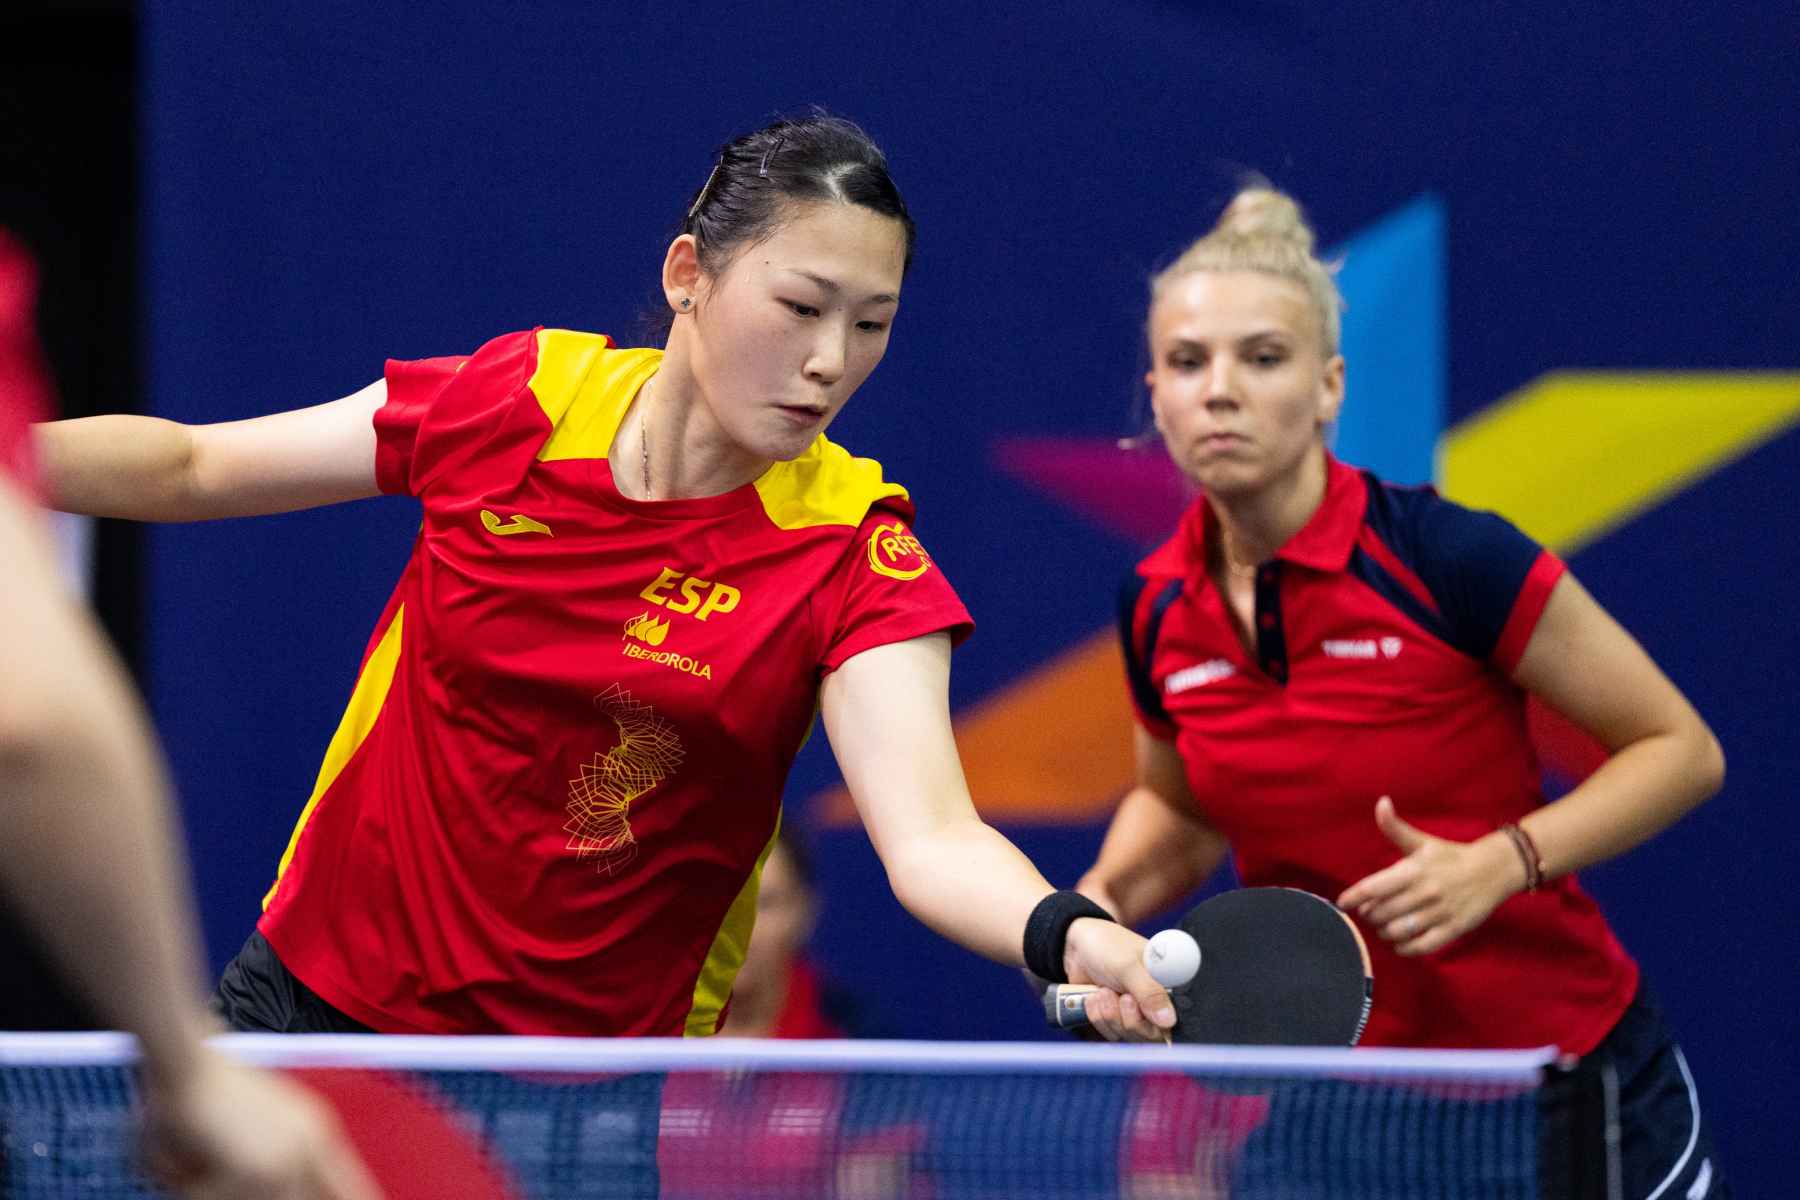 Maria Xiao y Adina Diaconu disputando la primera ronda en el Campeonato de Europa 2022 (Foto: Alvaro Diaz)